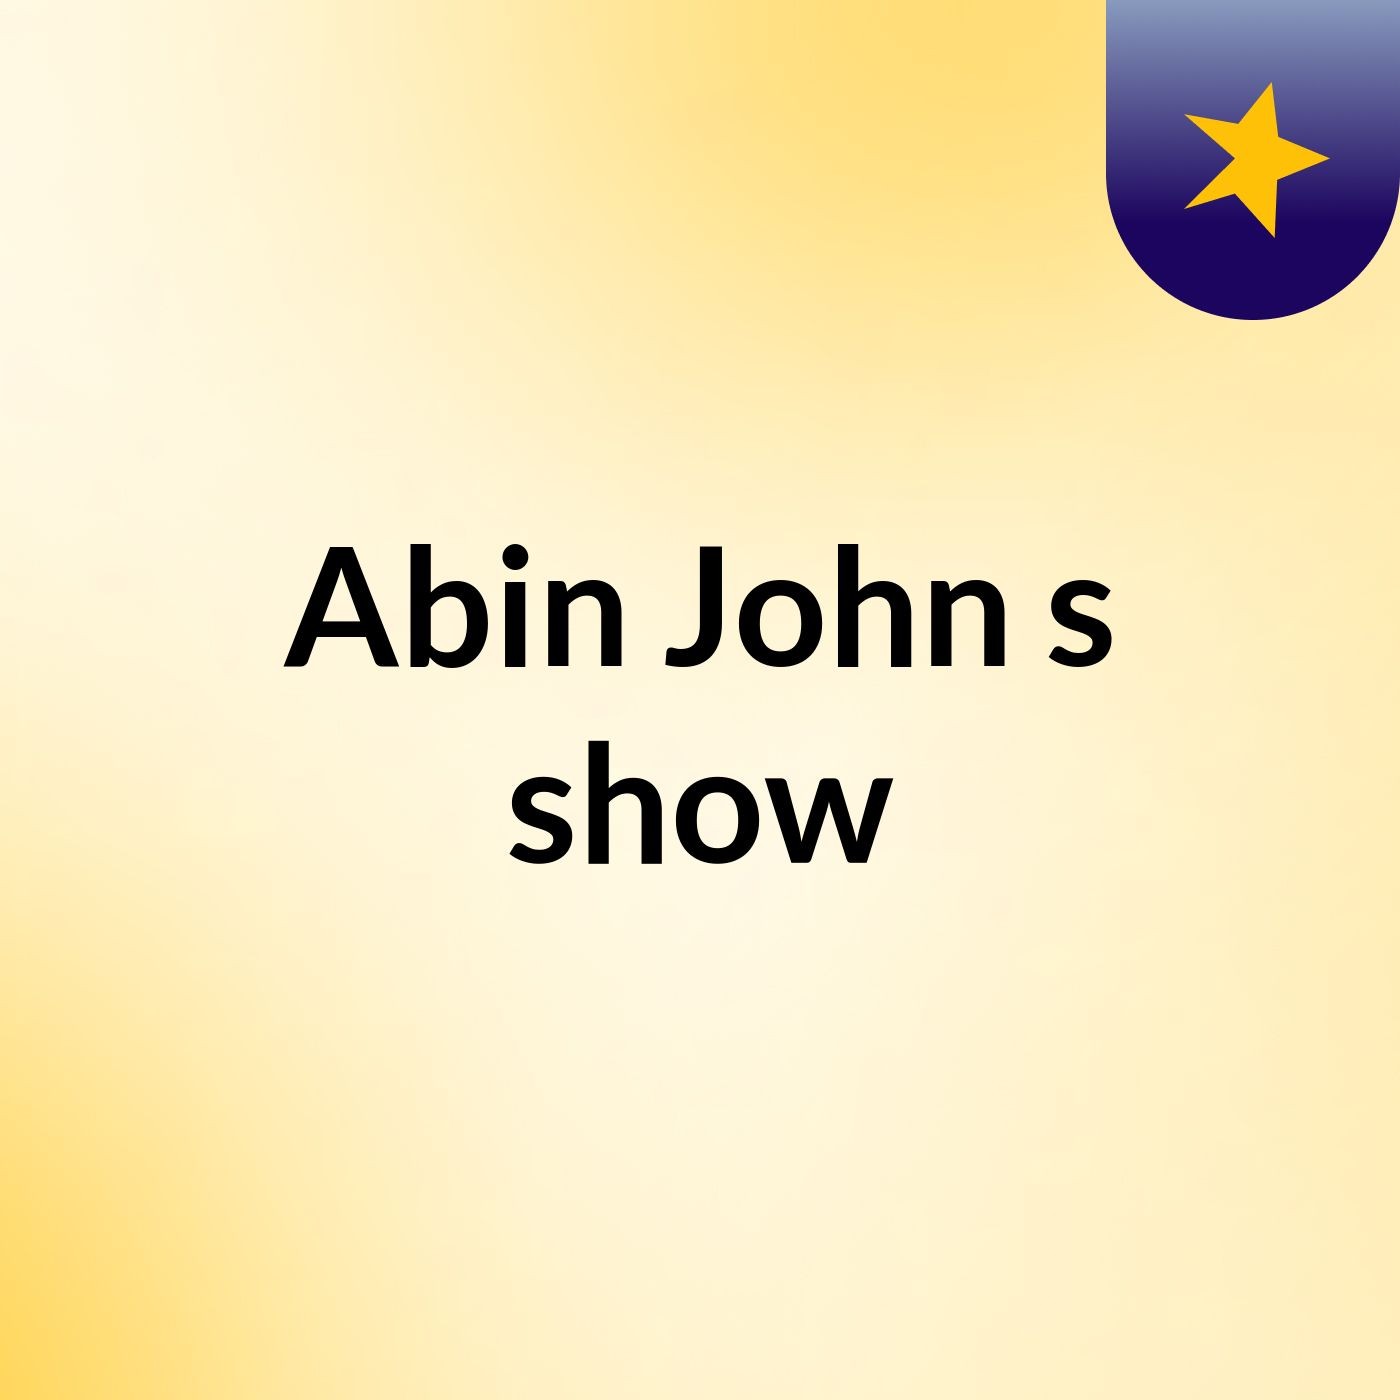 Abin John's show